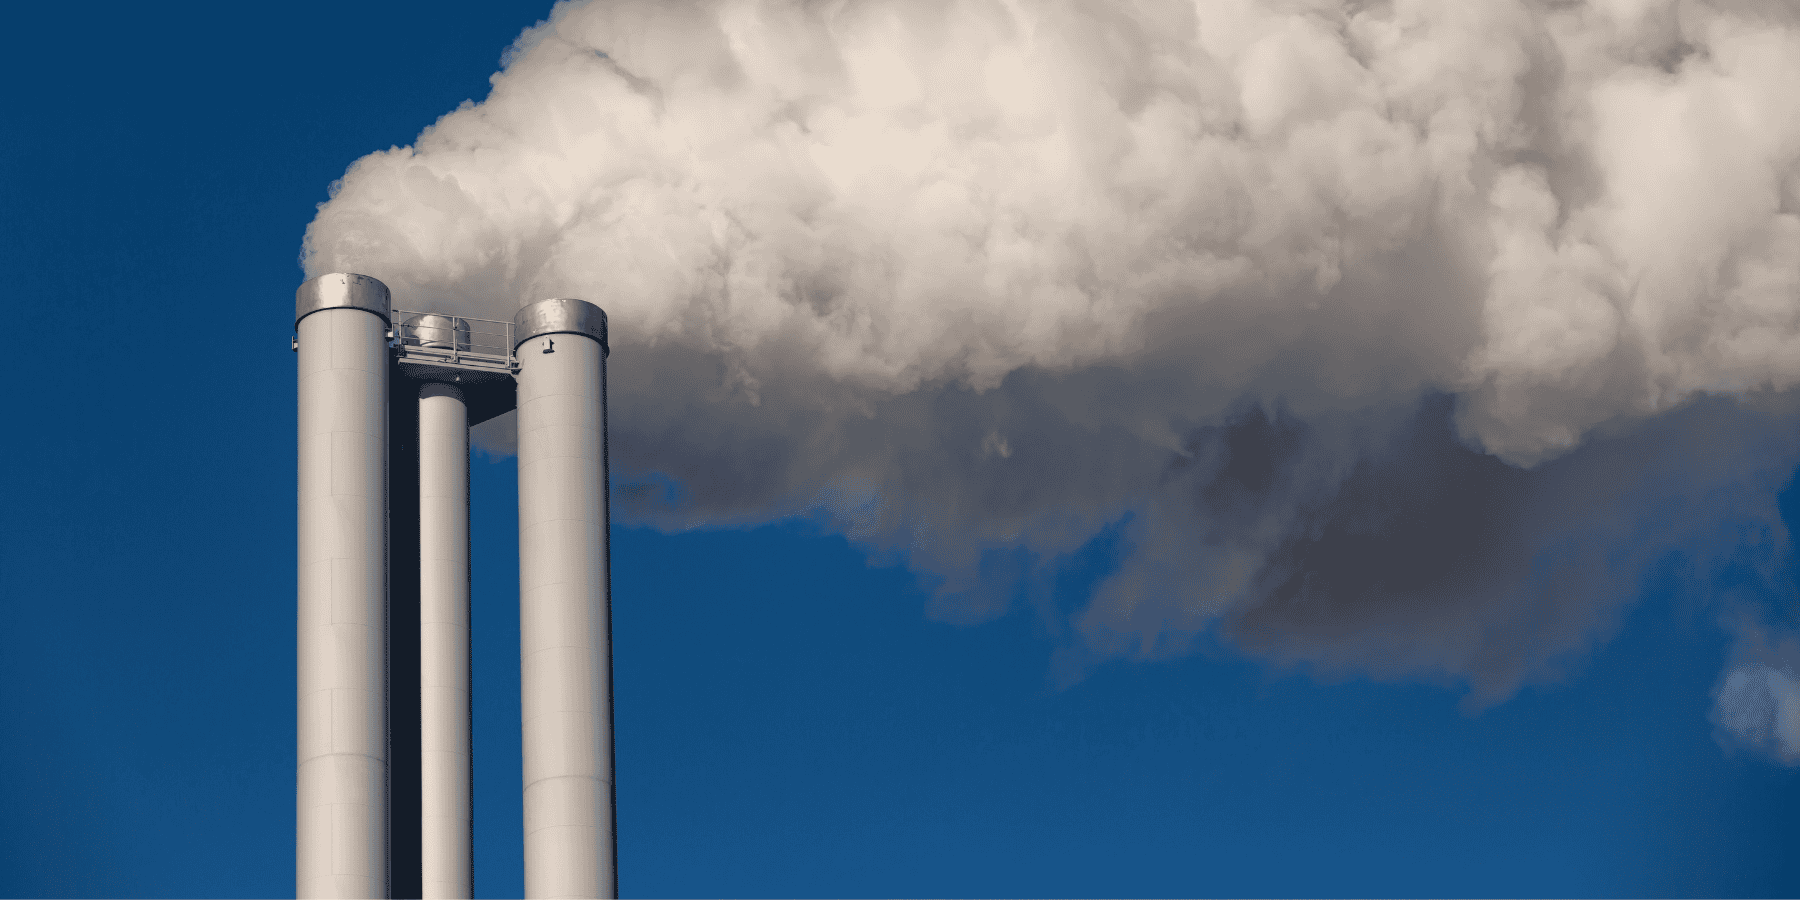 57 firm odpowiada za 80% emisji gazów cieplarnianych. Te wzrastają, choć miały maleć